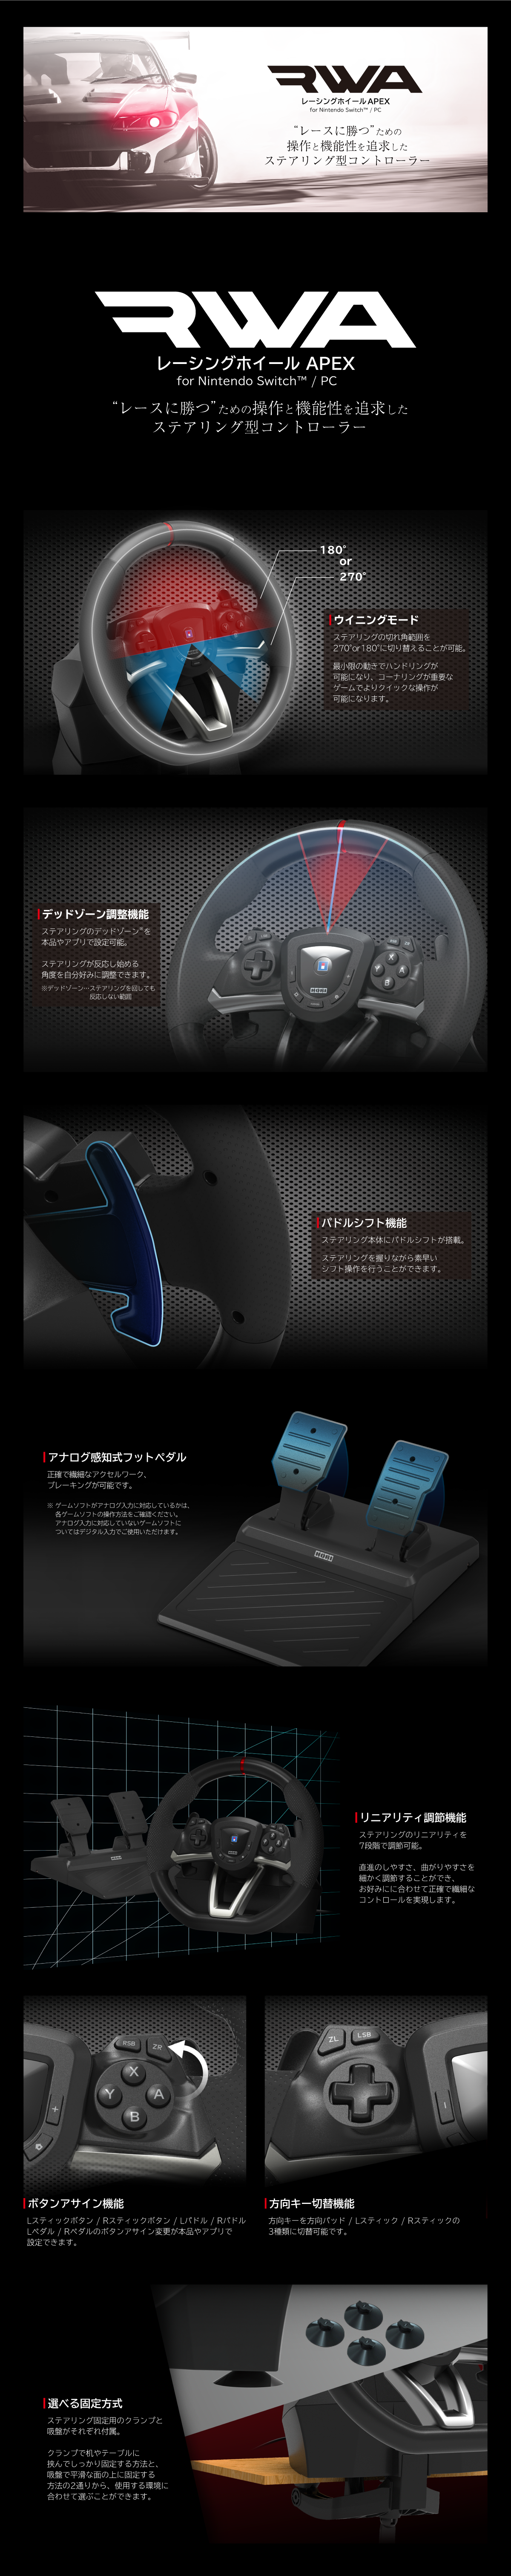 株式会社 HORI | レーシングホイール APEX for Nintendo Switch™ / PC